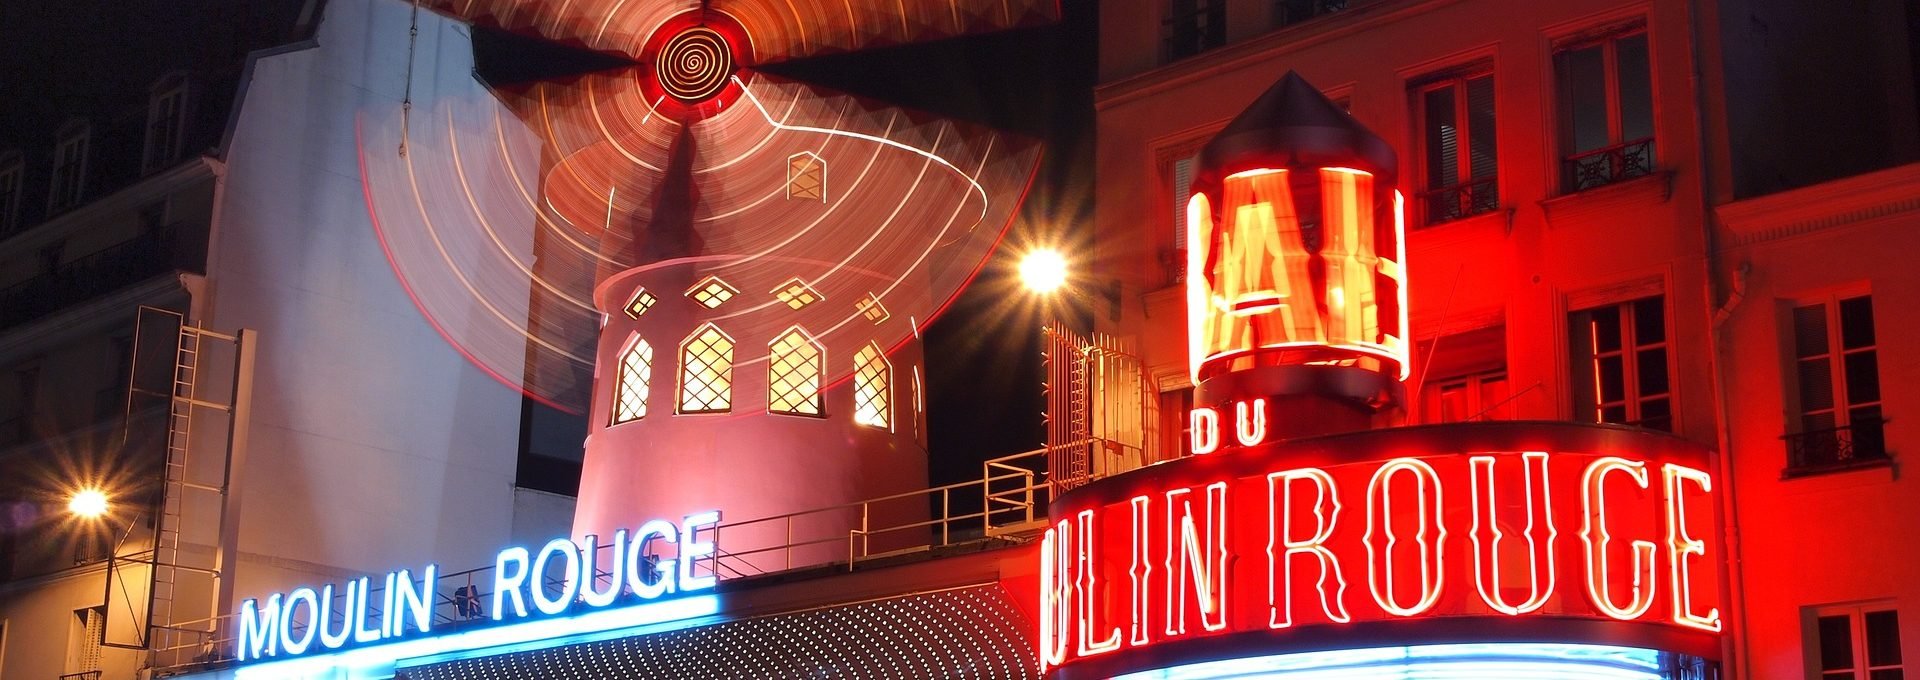 Vista externa do Moulin Rouge em Paris durante a noite